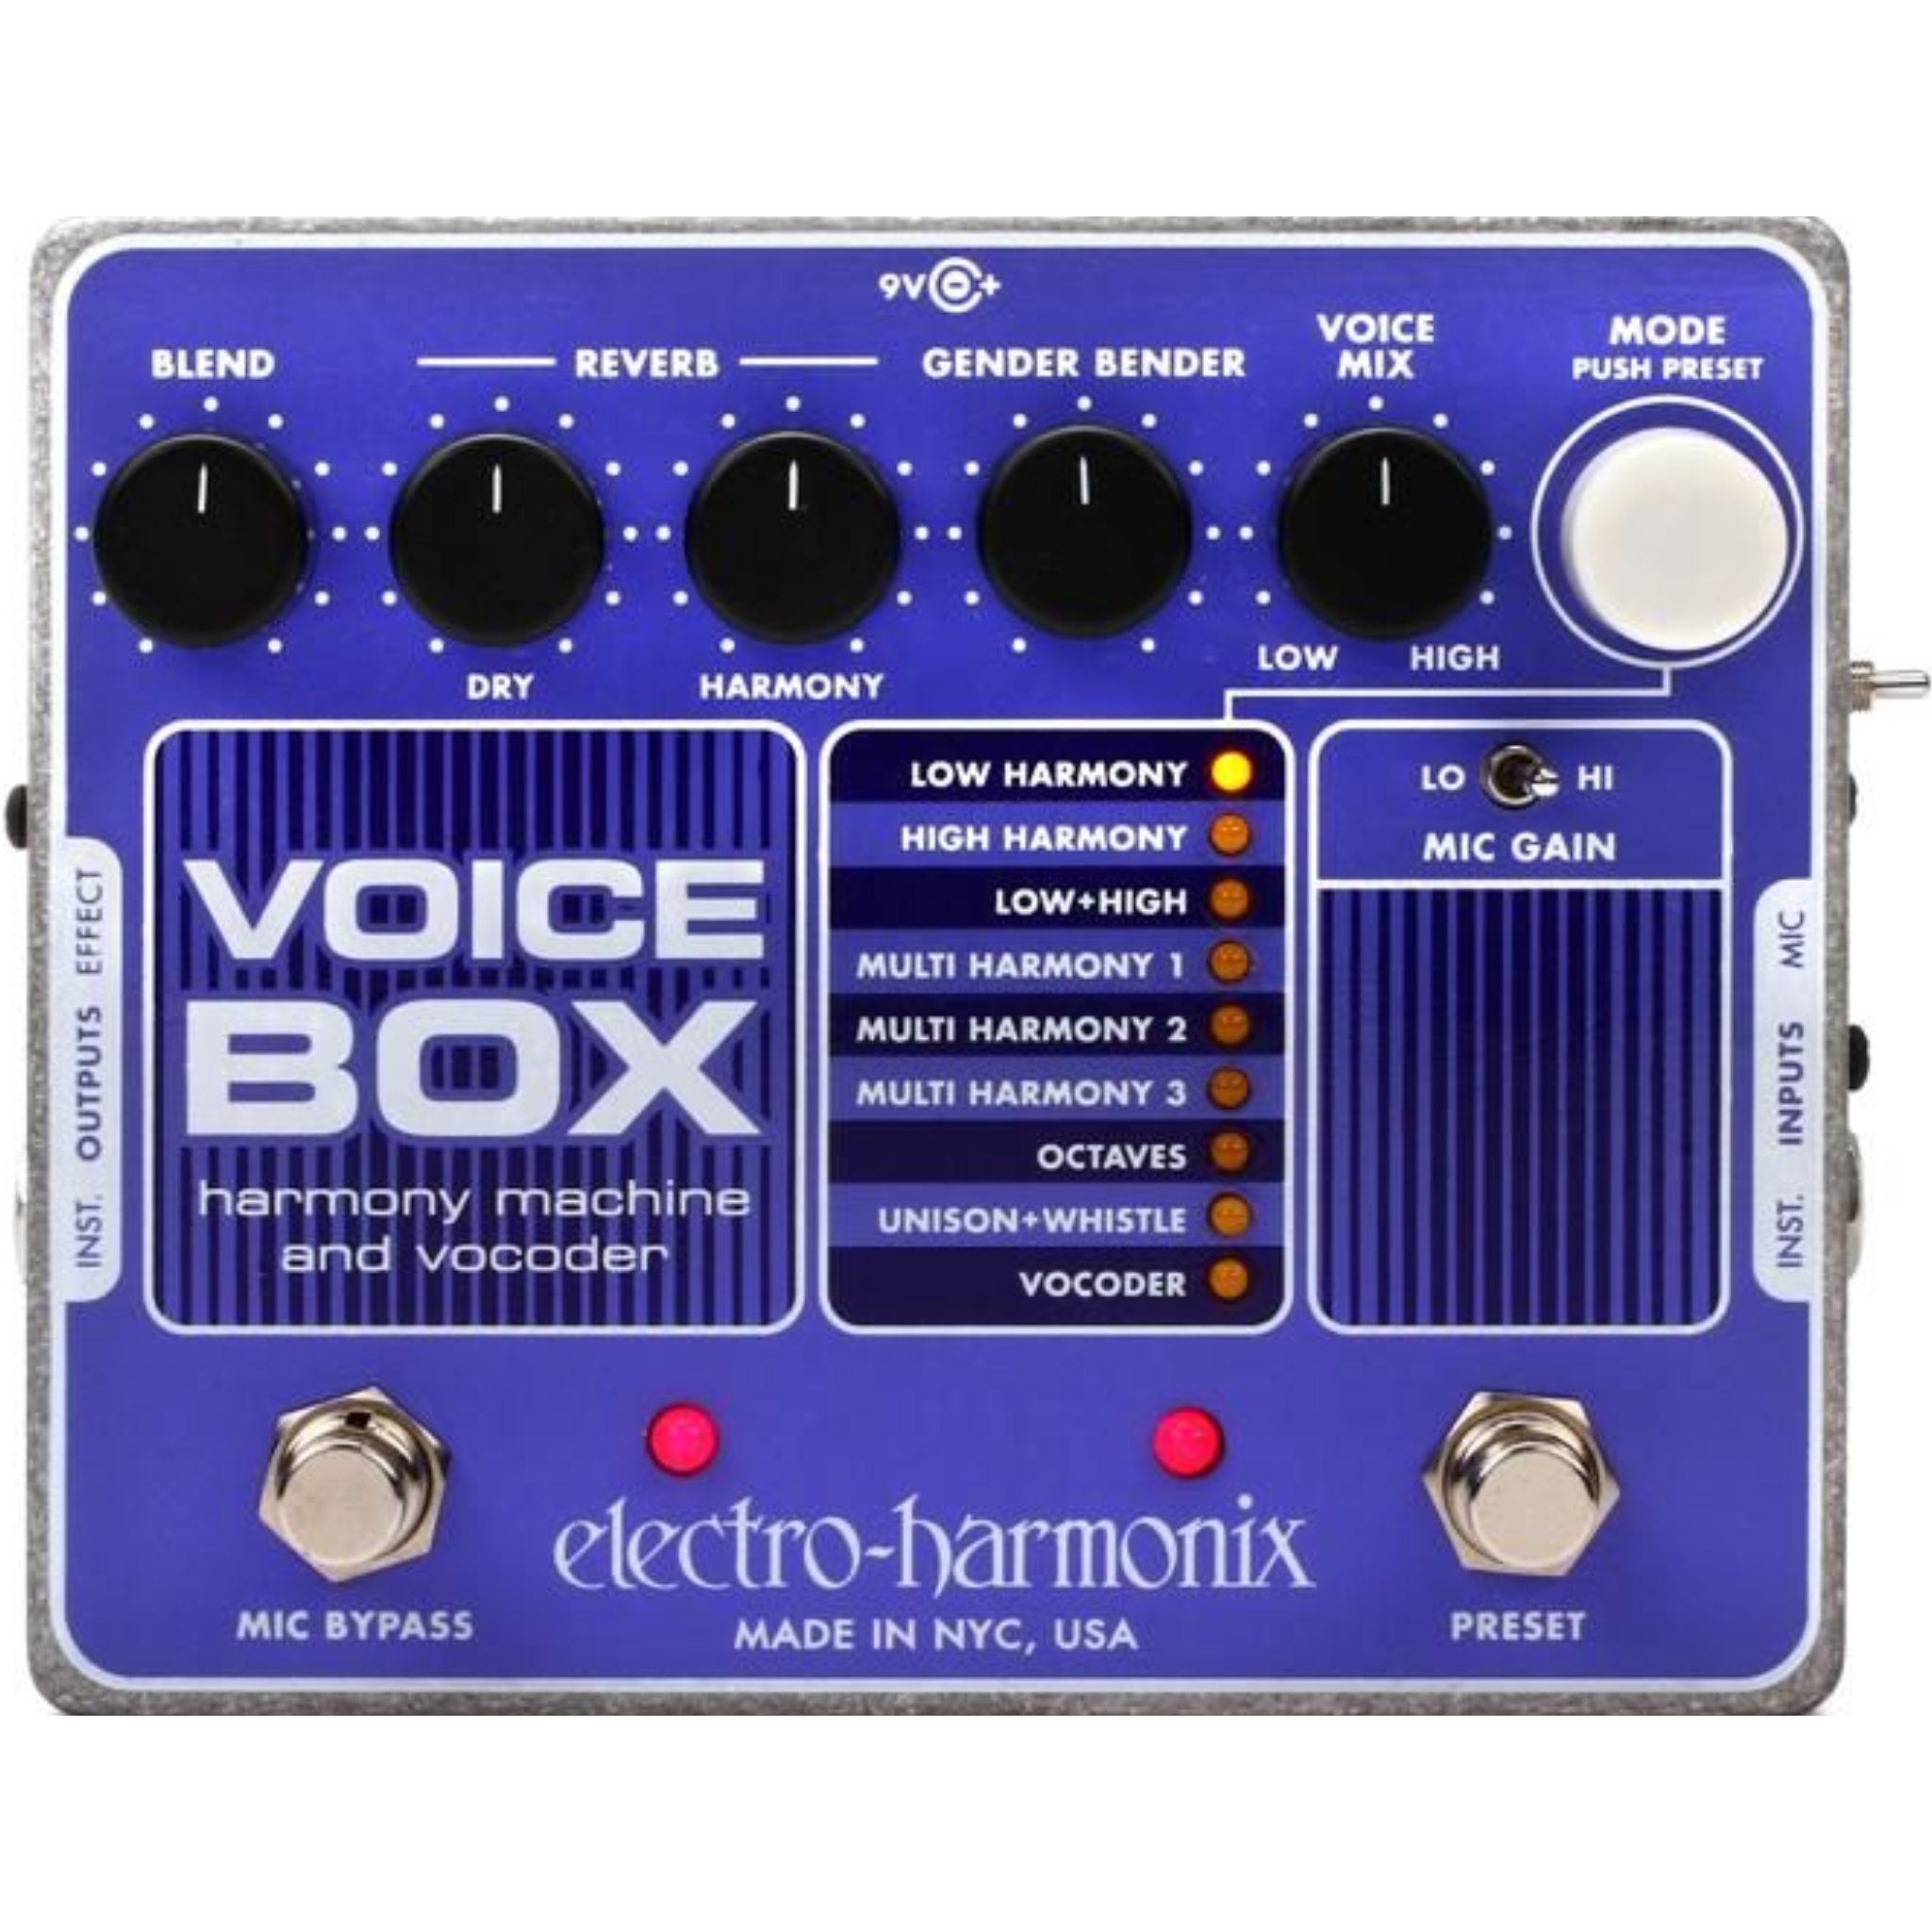 ELECTRO-HARMONIX VOICE BOX ボコーダー エレハモ-